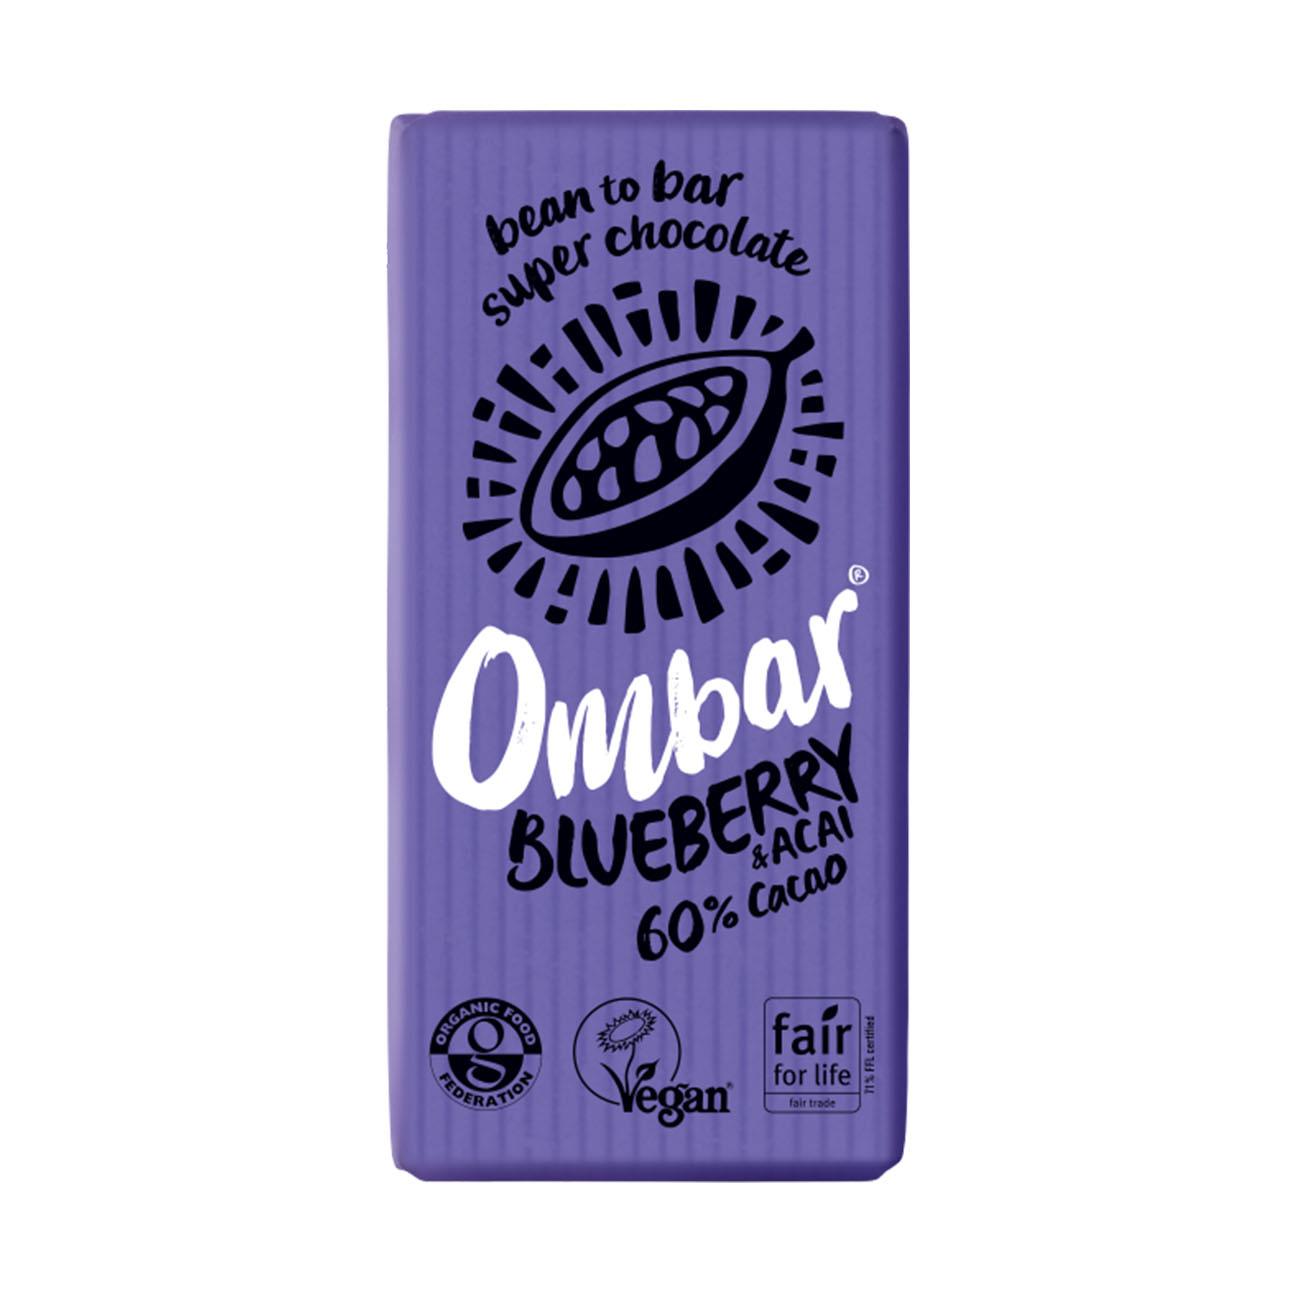 Blueberry Acai 60% Cacao Chocolate Bar 35g